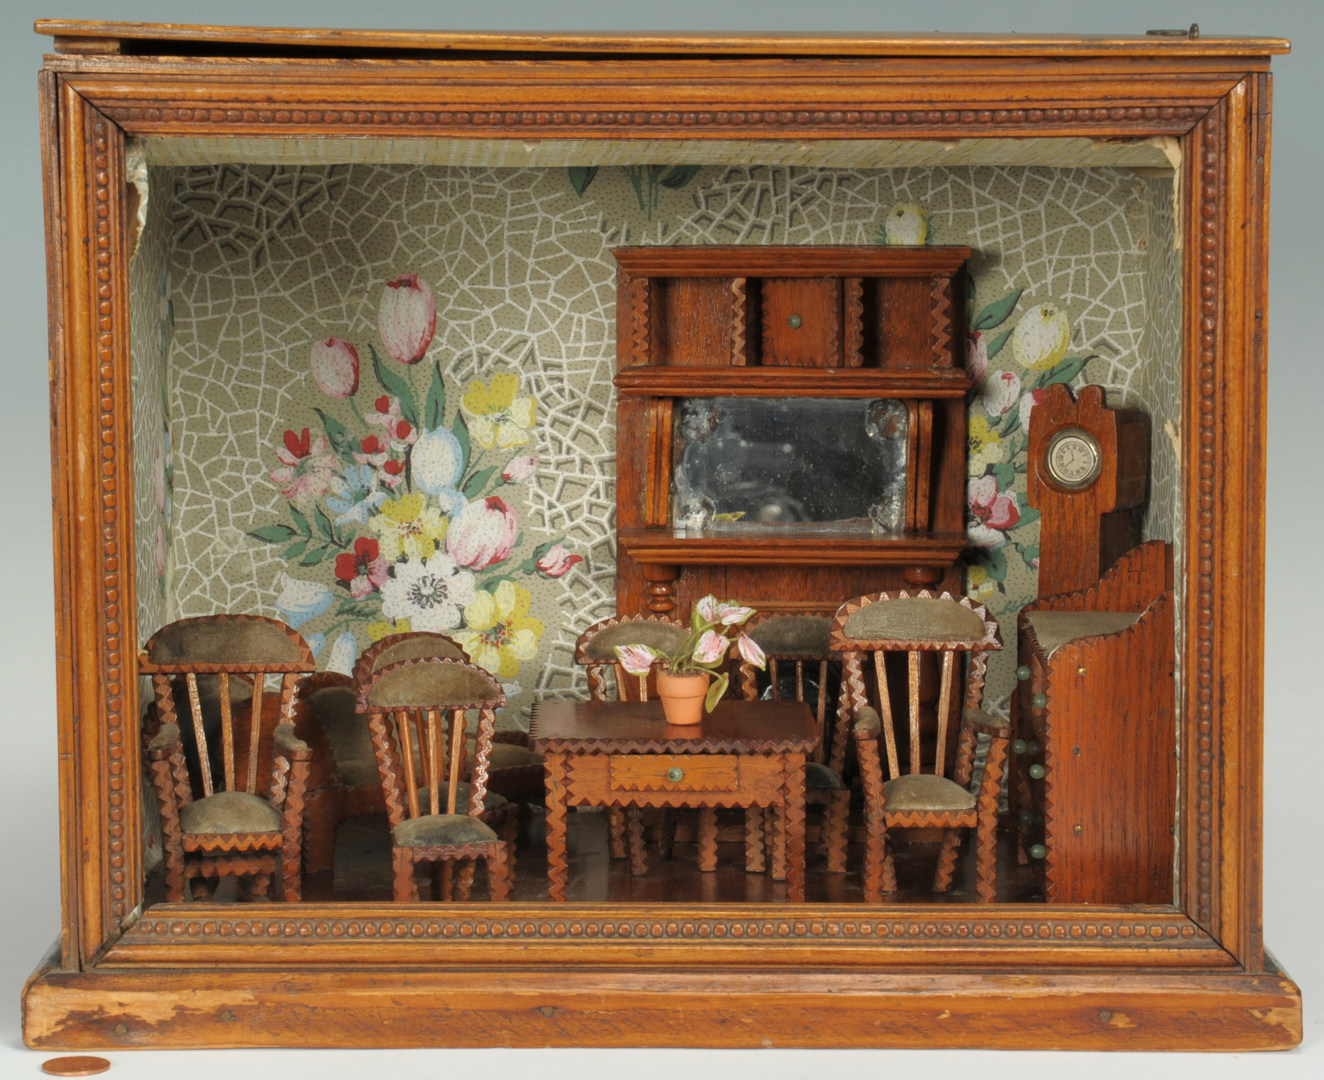 Lot 309: Miniature Folk Art Room Diorama